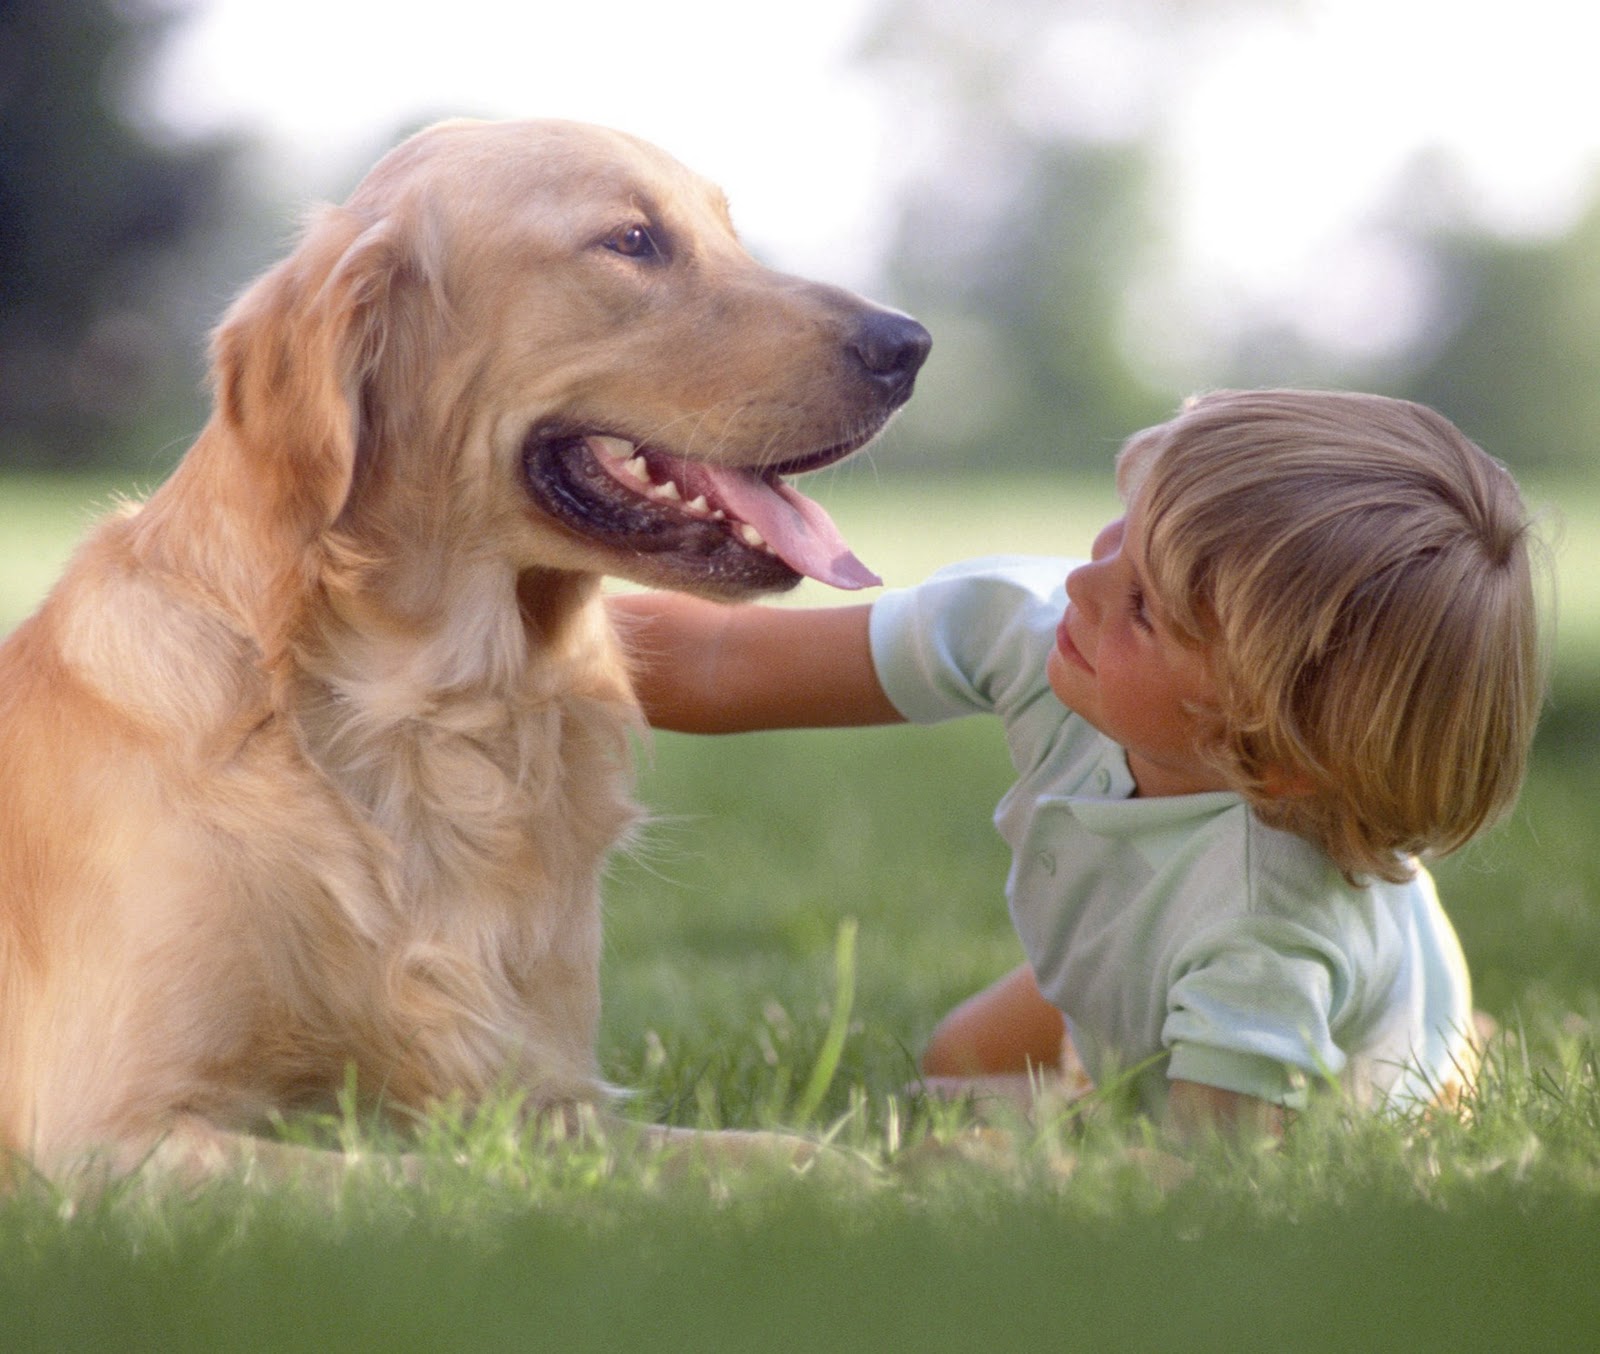 Kind pets. Домашние животные для детей. Общение с животными для детей. Собака для детей. Дети с животными.